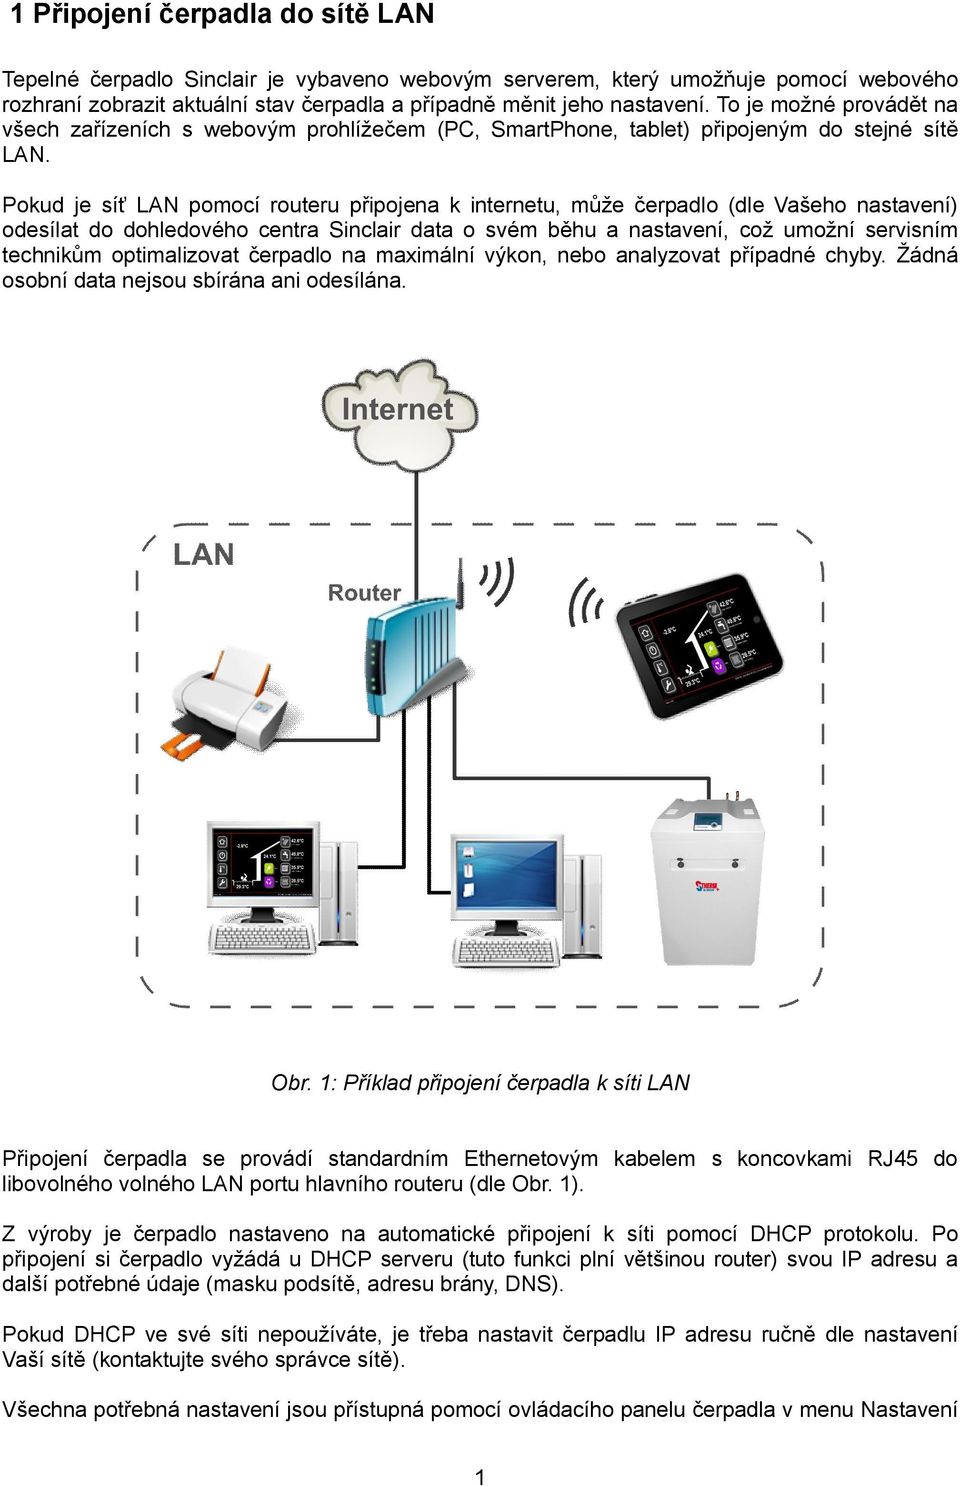 Pokud je síť LAN pomocí routeru připojena k internetu, může čerpadlo (dle Vašeho nastavení) odesílat do dohledového centra Sinclair data o svém běhu a nastavení, což umožní servisním technikům